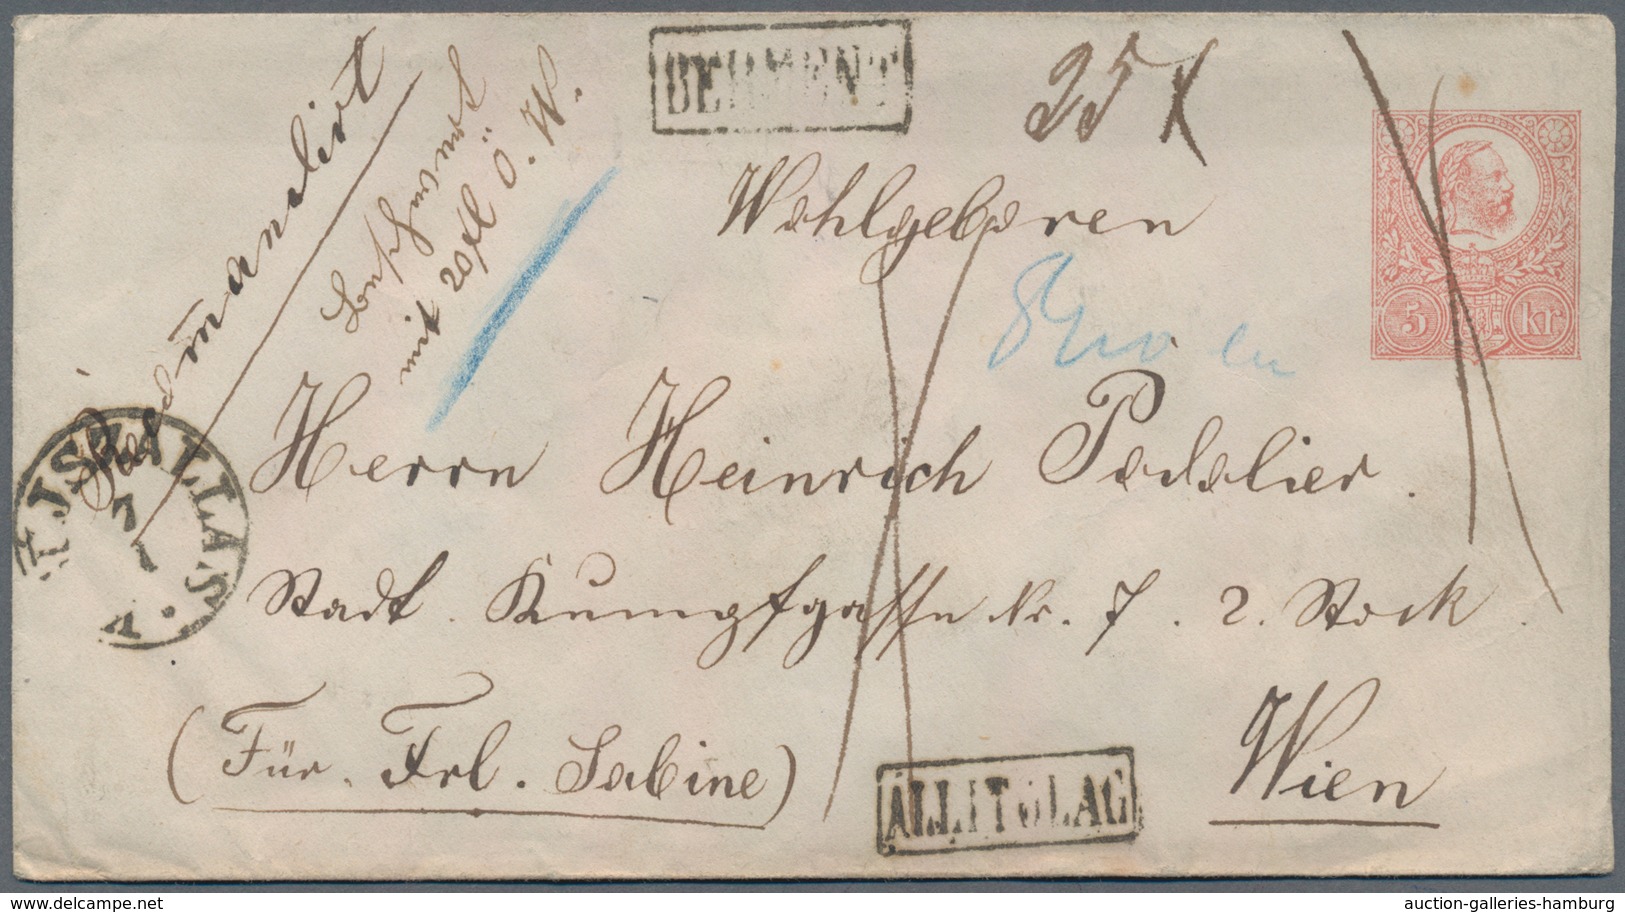 Ungarn - Ganzsachen: 1871, 5 Kr. Ganzsachenumschlag Ab "ISZALAS" Nach Wien, "Rekommandiert" Mit Hand - Postal Stationery